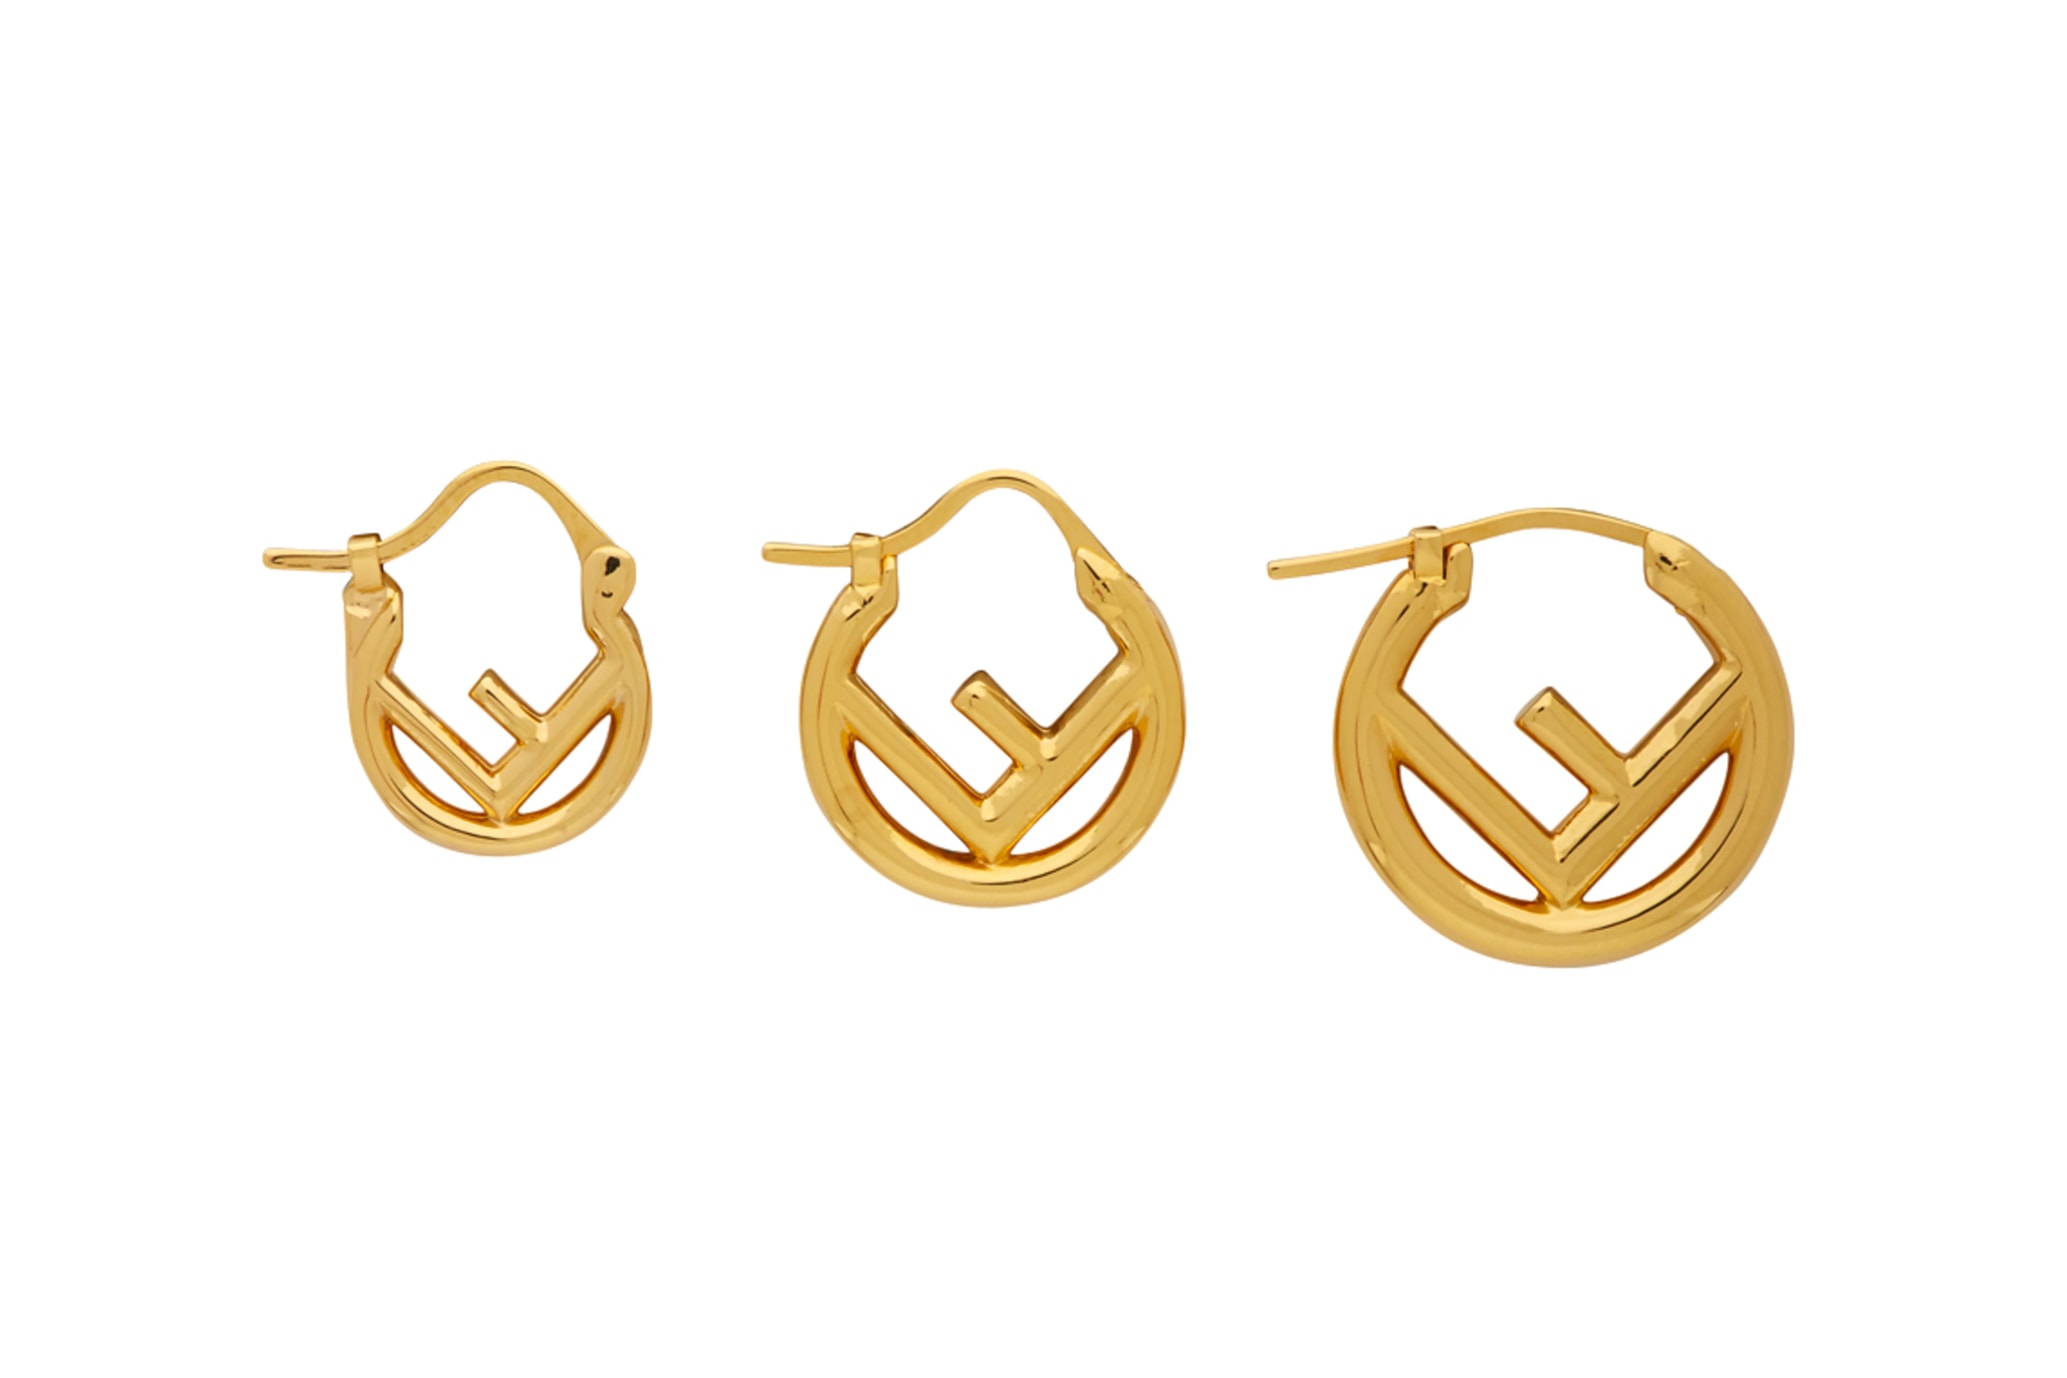 fendi f is mini hoop earring sets jewelry ears ssense gold silver metal fashion style